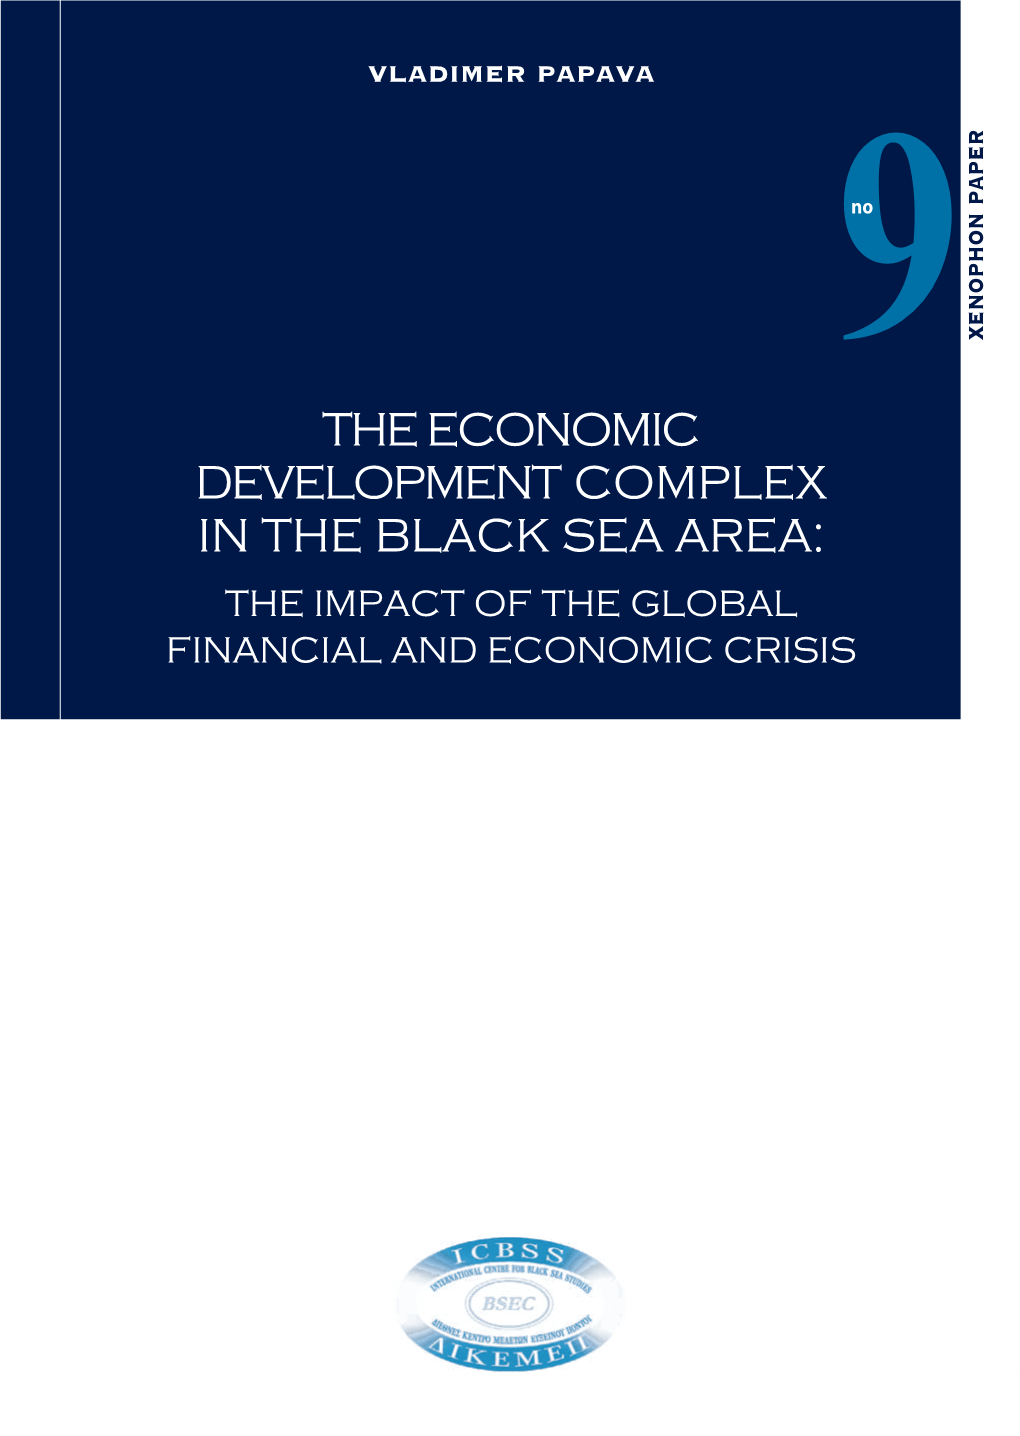 The Economic Development Complex in the Black Sea Area